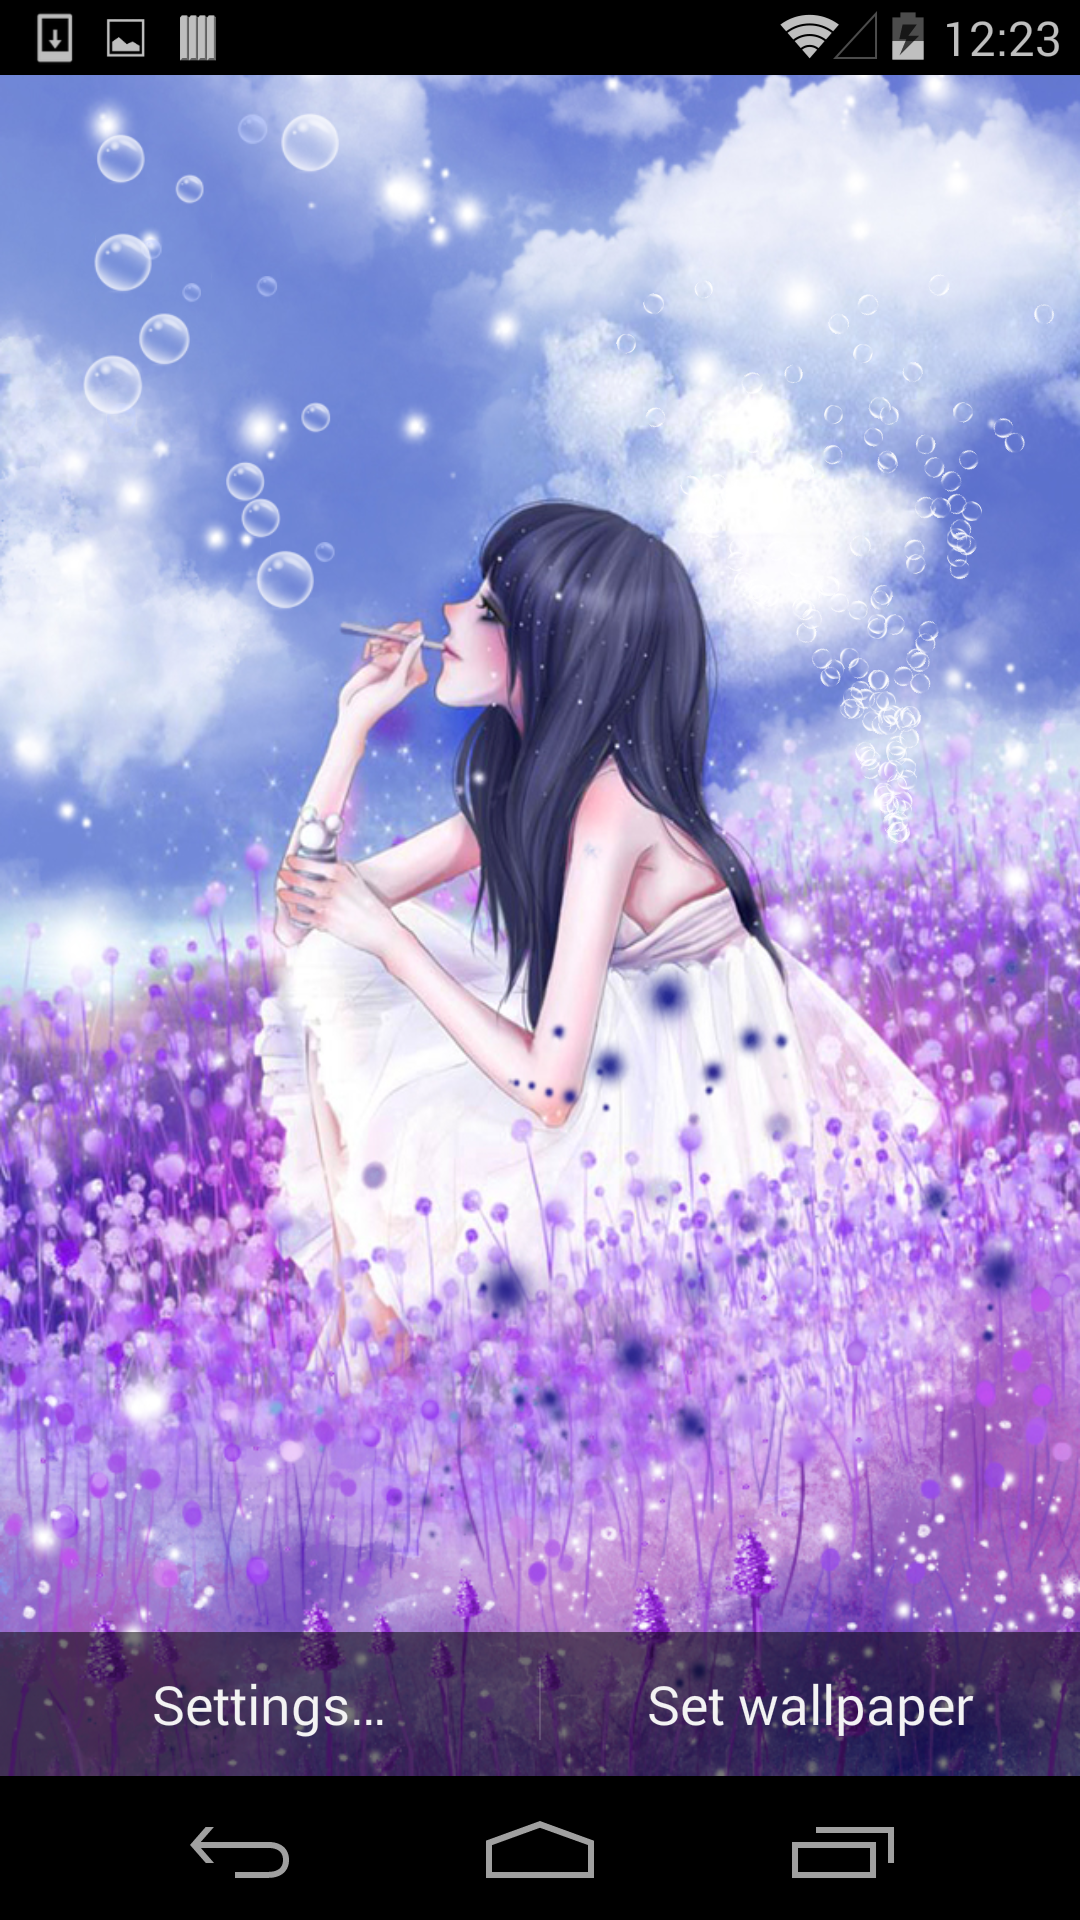 一片片紫色绝美的薰衣草花海中,一个穿着白色长裙的少女,在花丛中悠闲